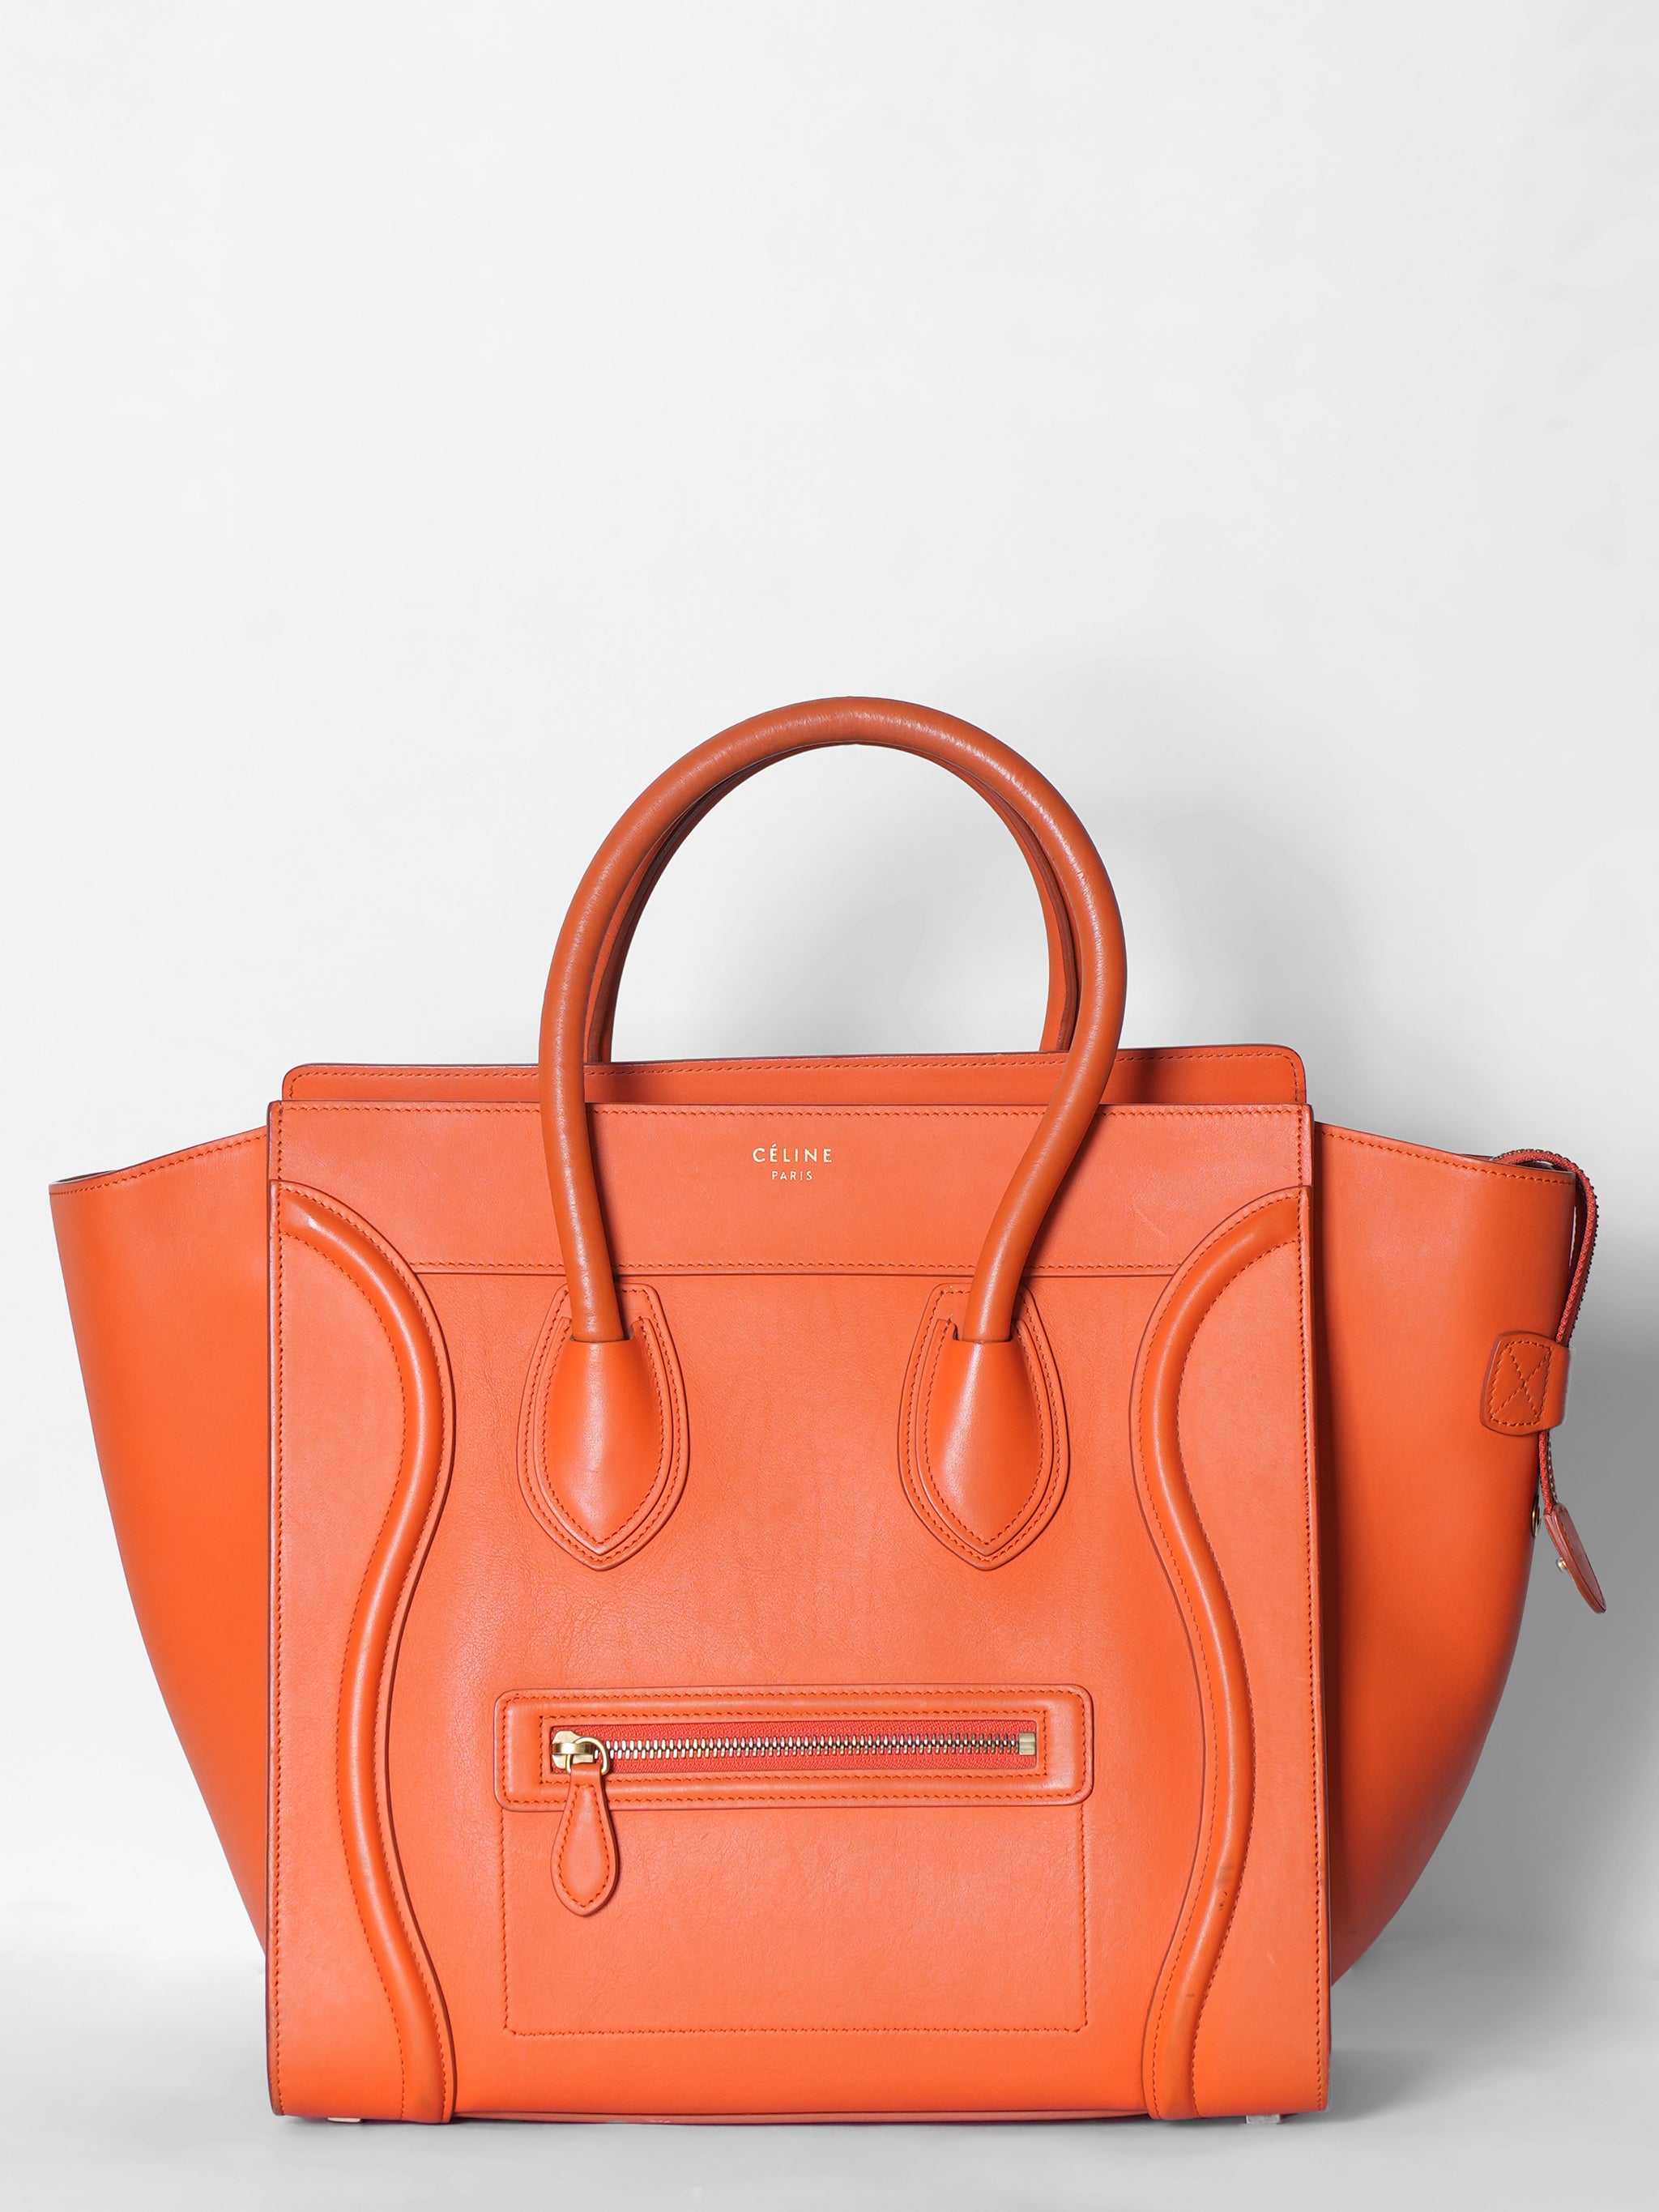 Celine Orange Medium Luggage Leather Handbag